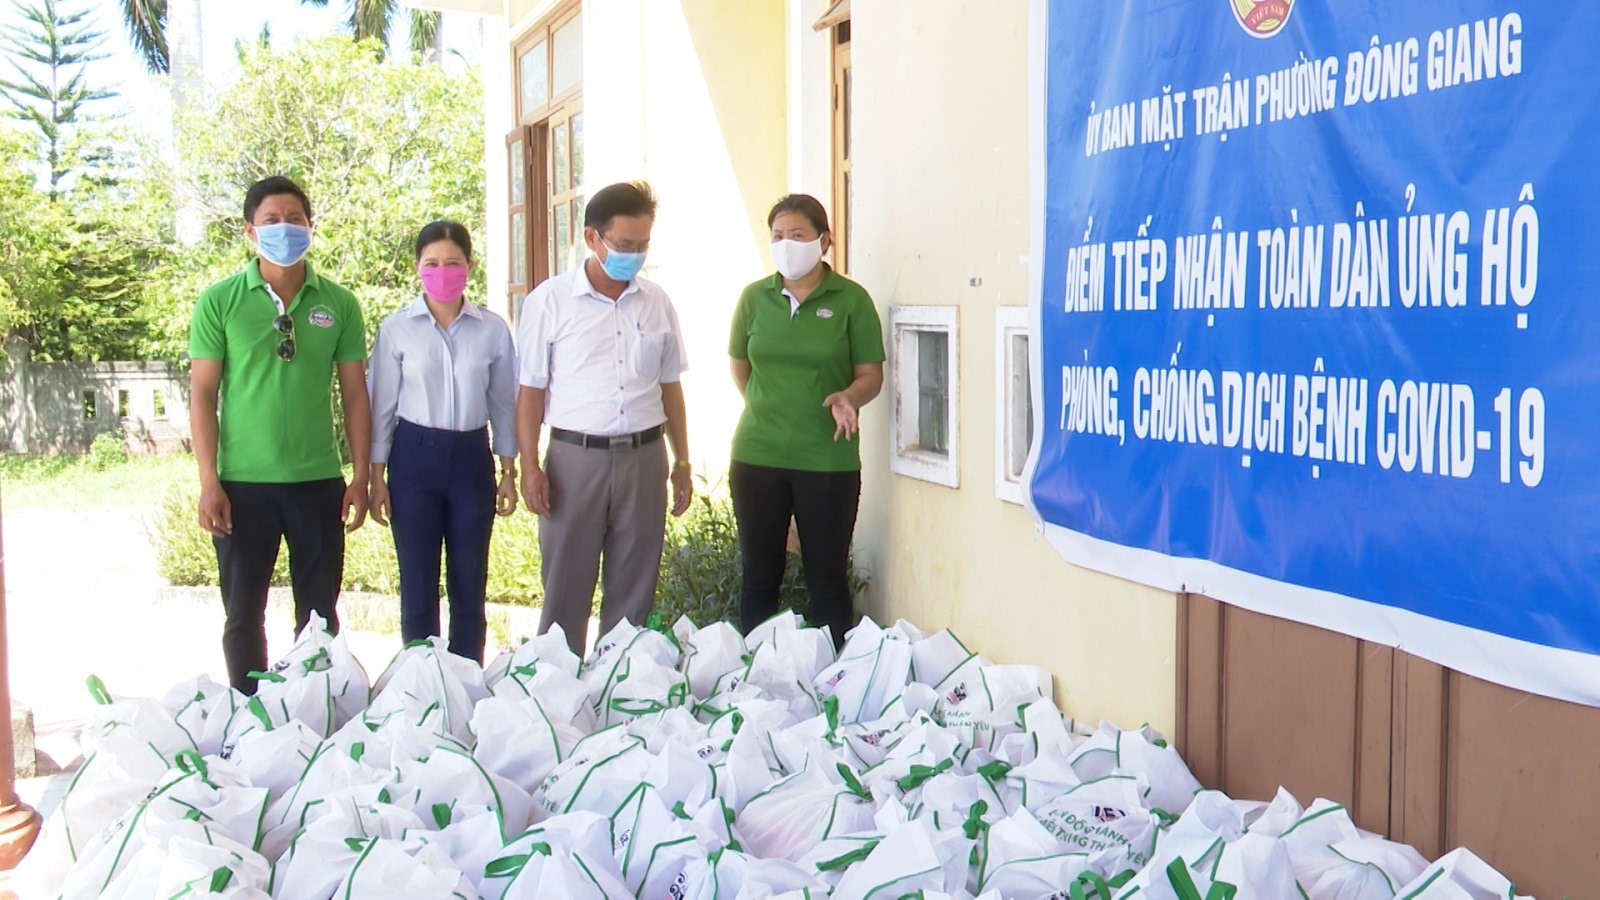 Đại diện phường Đông Giang, Tp Đông Hà tiếp nhận 100 suất quà từ chương trình.